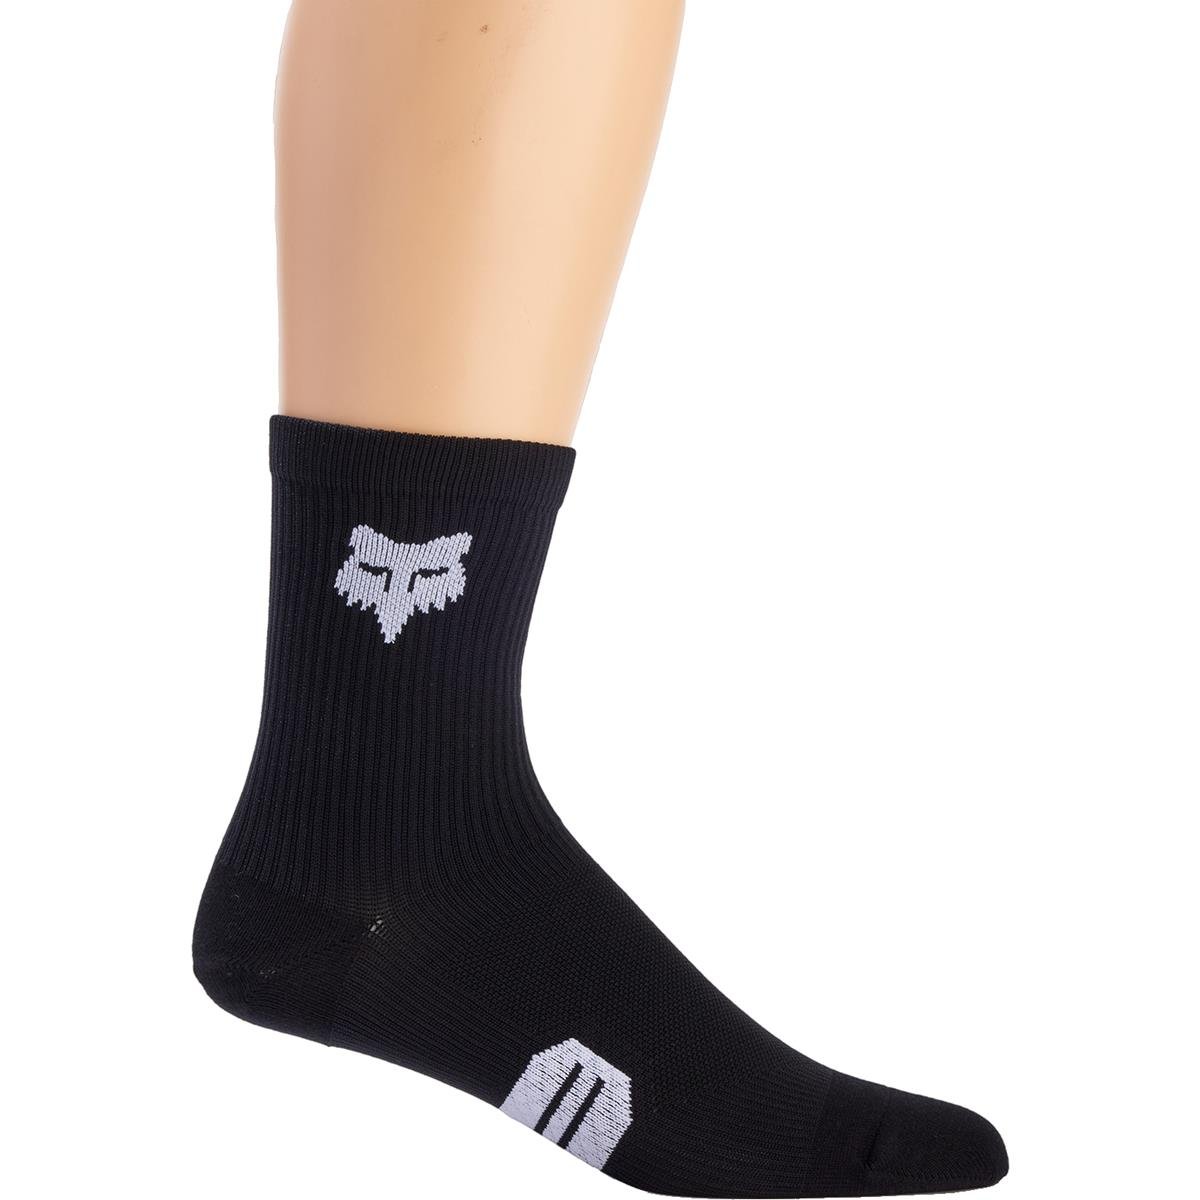 Fox Socks 6" Ranger Black